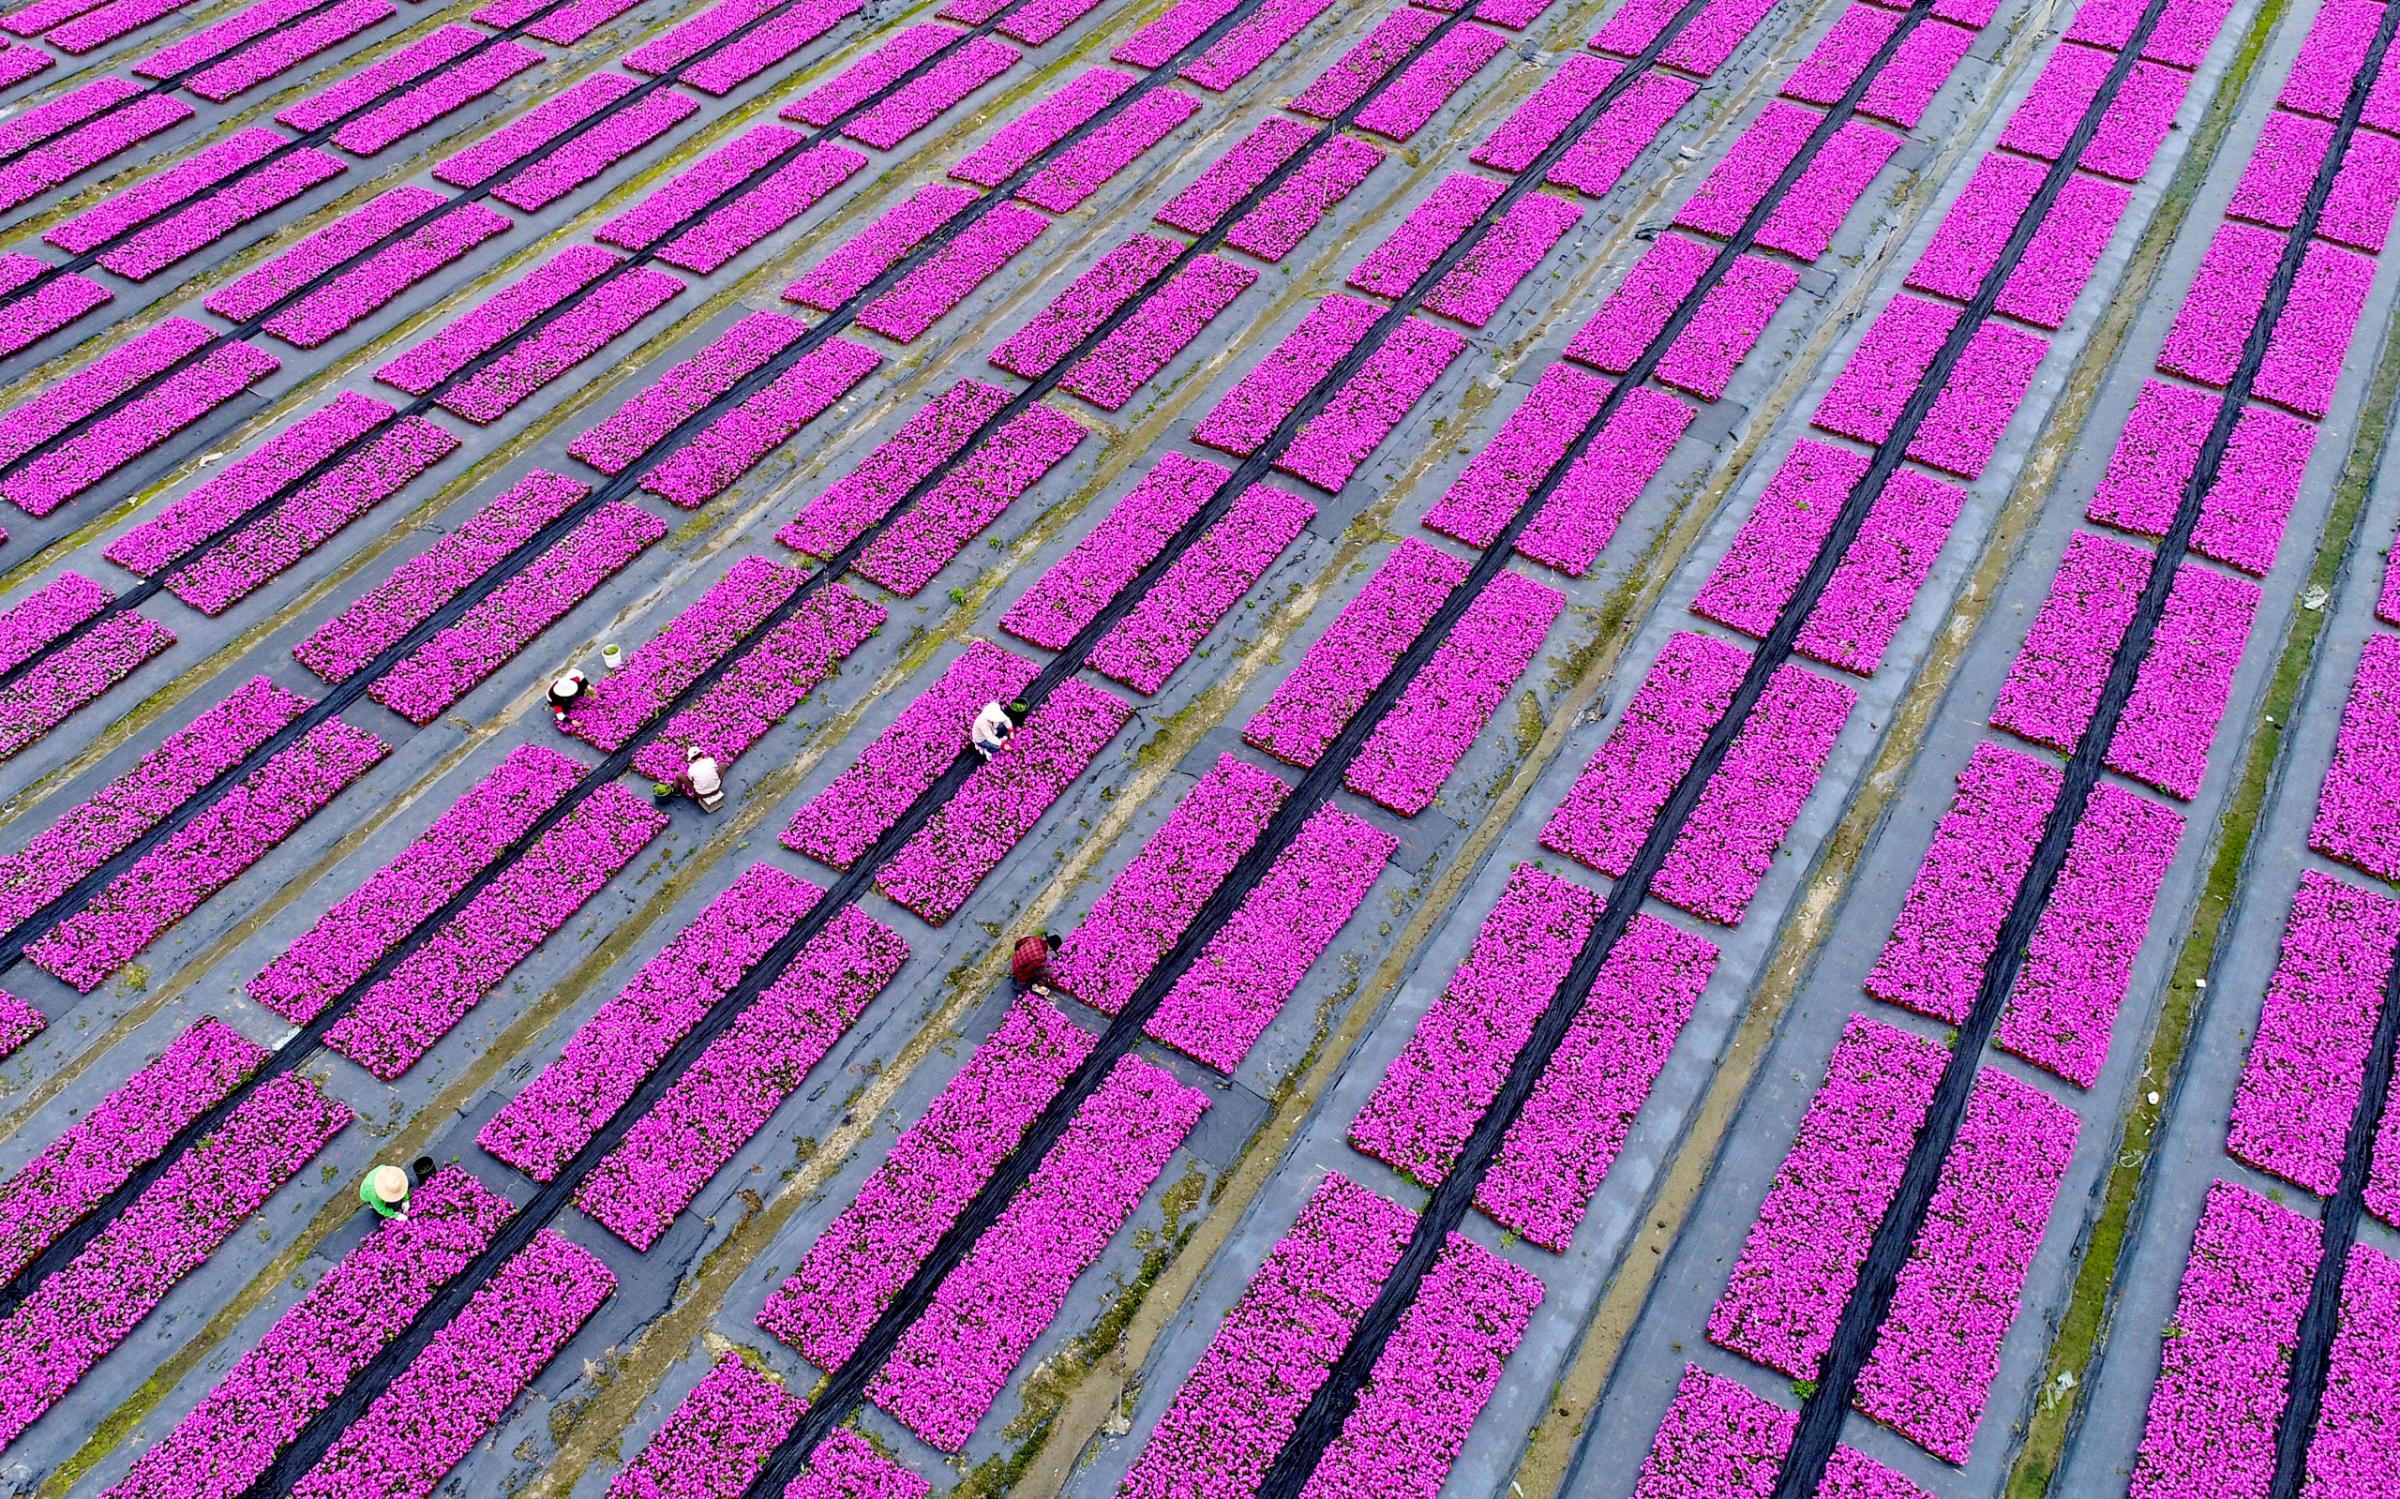 Aerial View of Flowers Field In Hangzhou